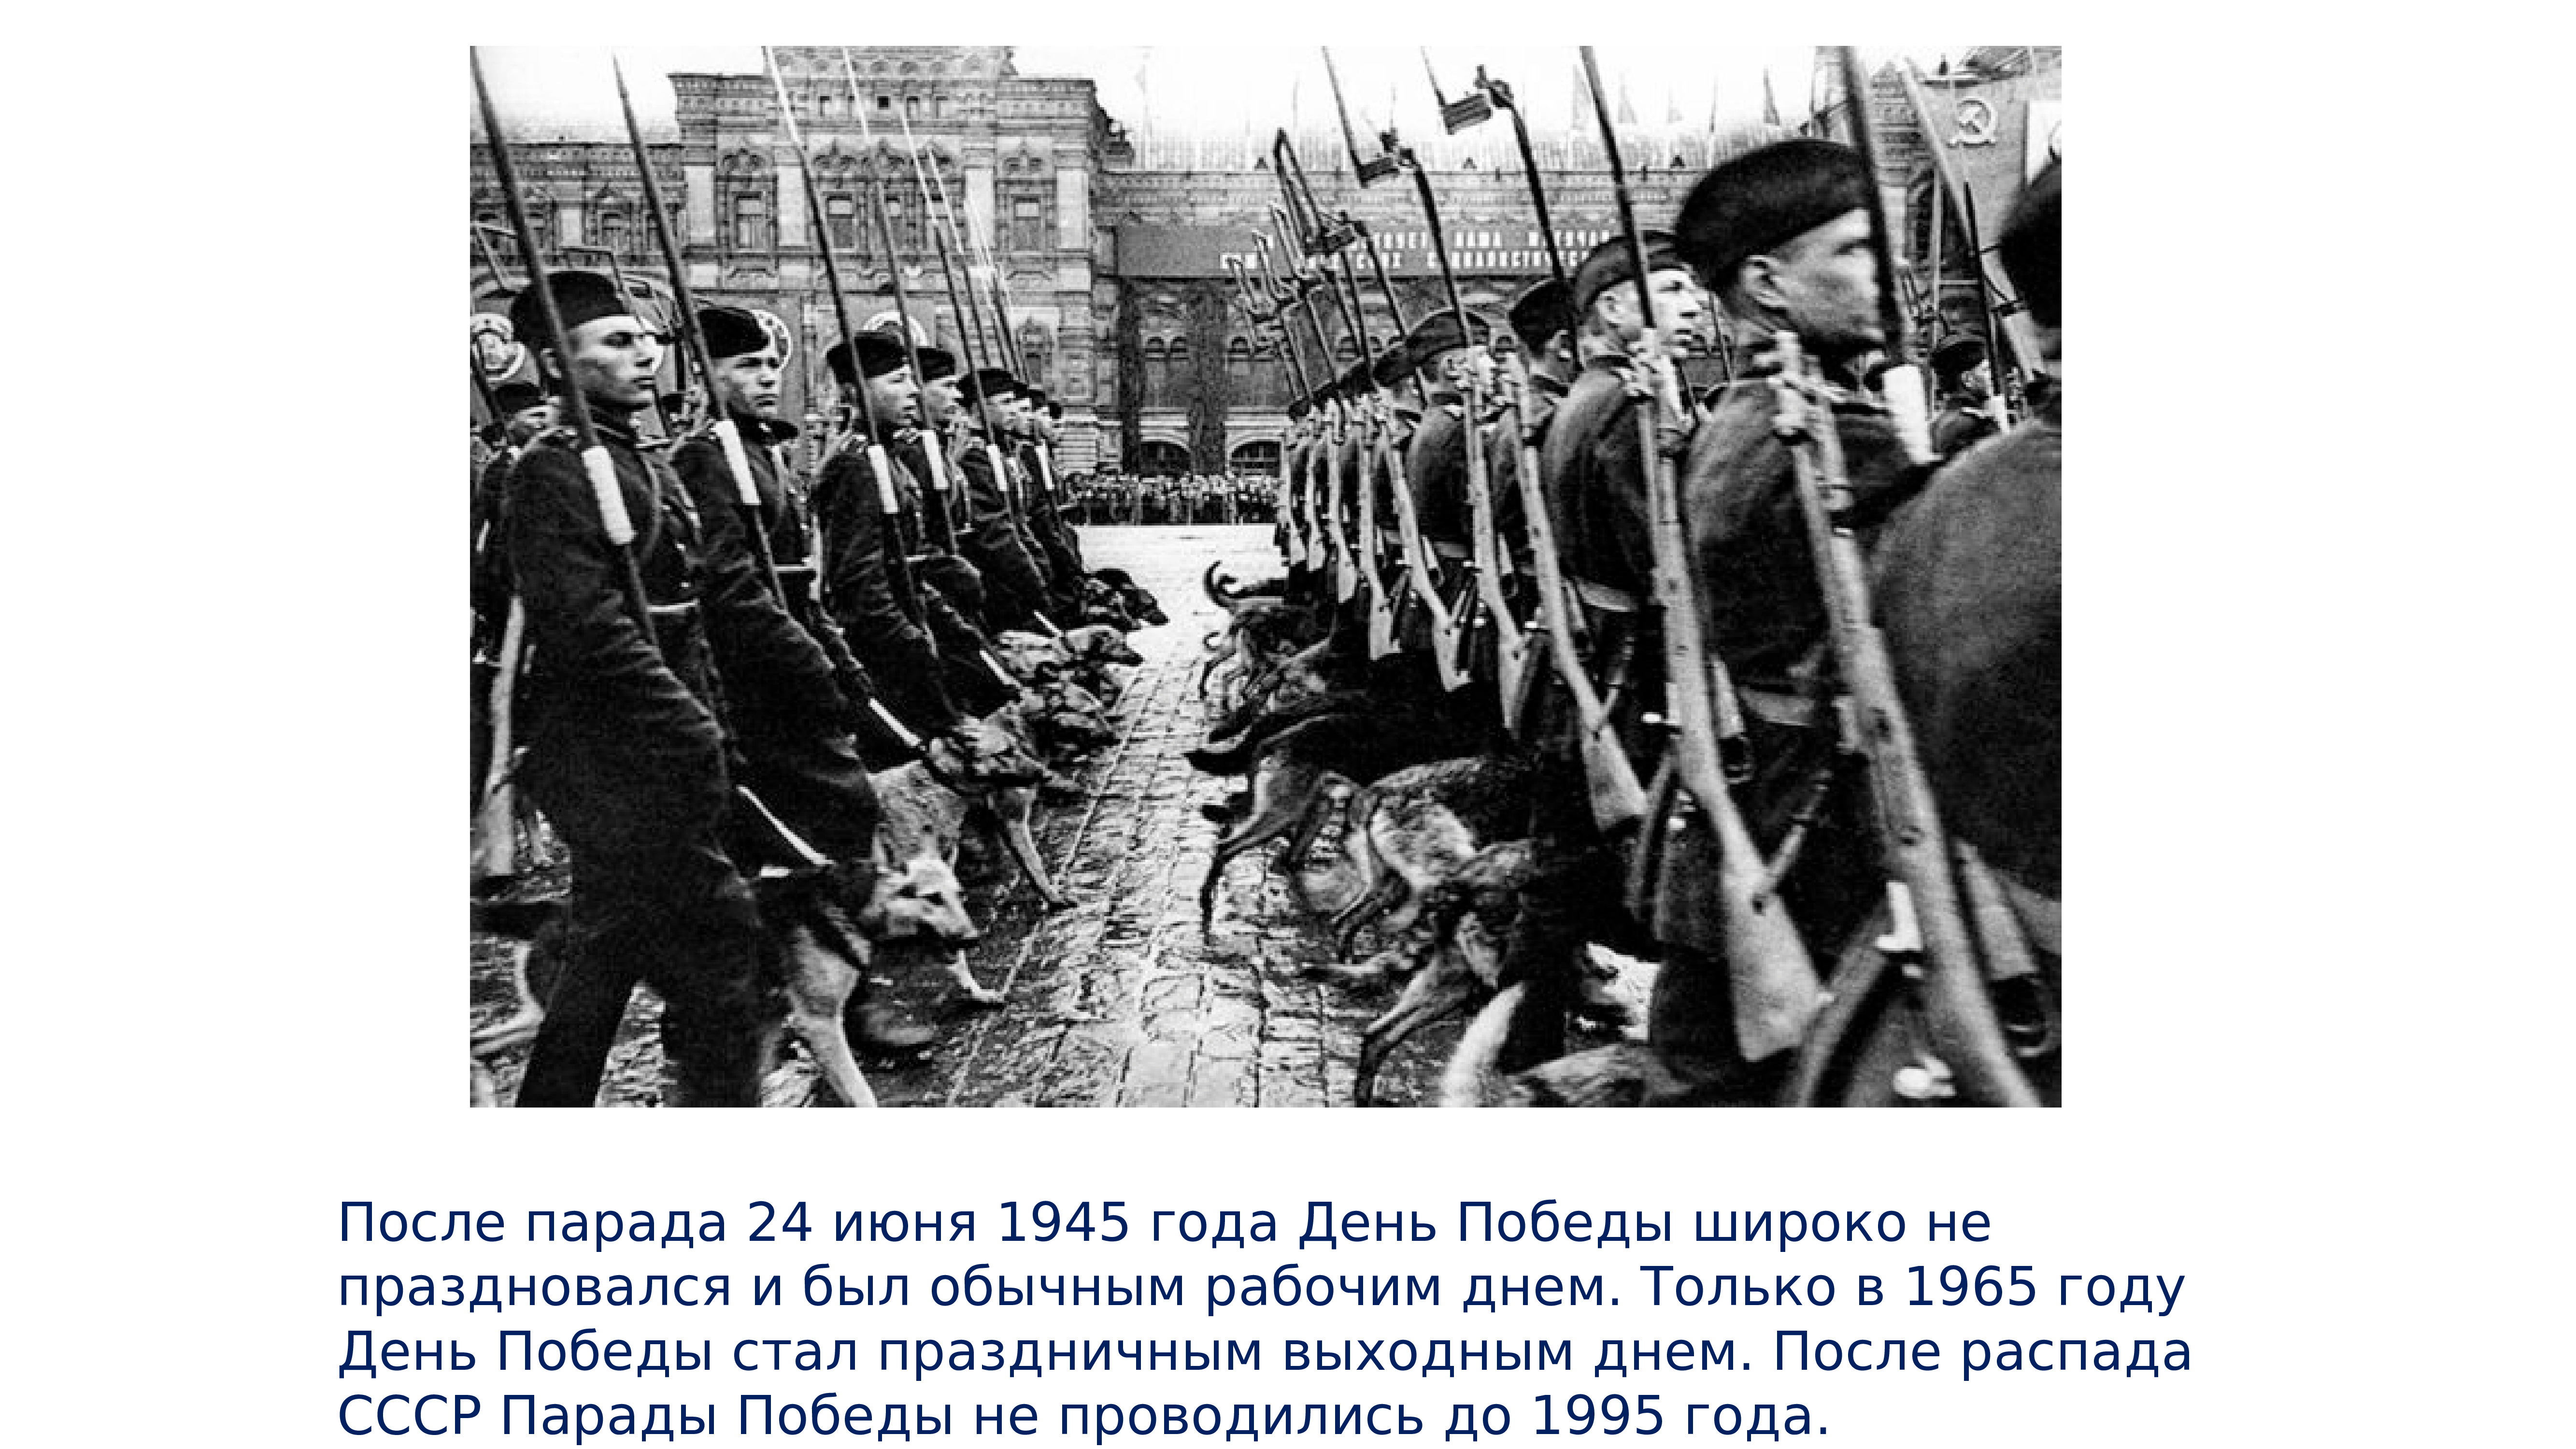 После парада 9 мая. День парада Победы 1945 года 24 июня. 24 Мая 1945 парад Победы в Москве. Парад Победы Советский Союз 24 июня 1945. Парад Победы 24 июня 1945 года фашистские знамена.